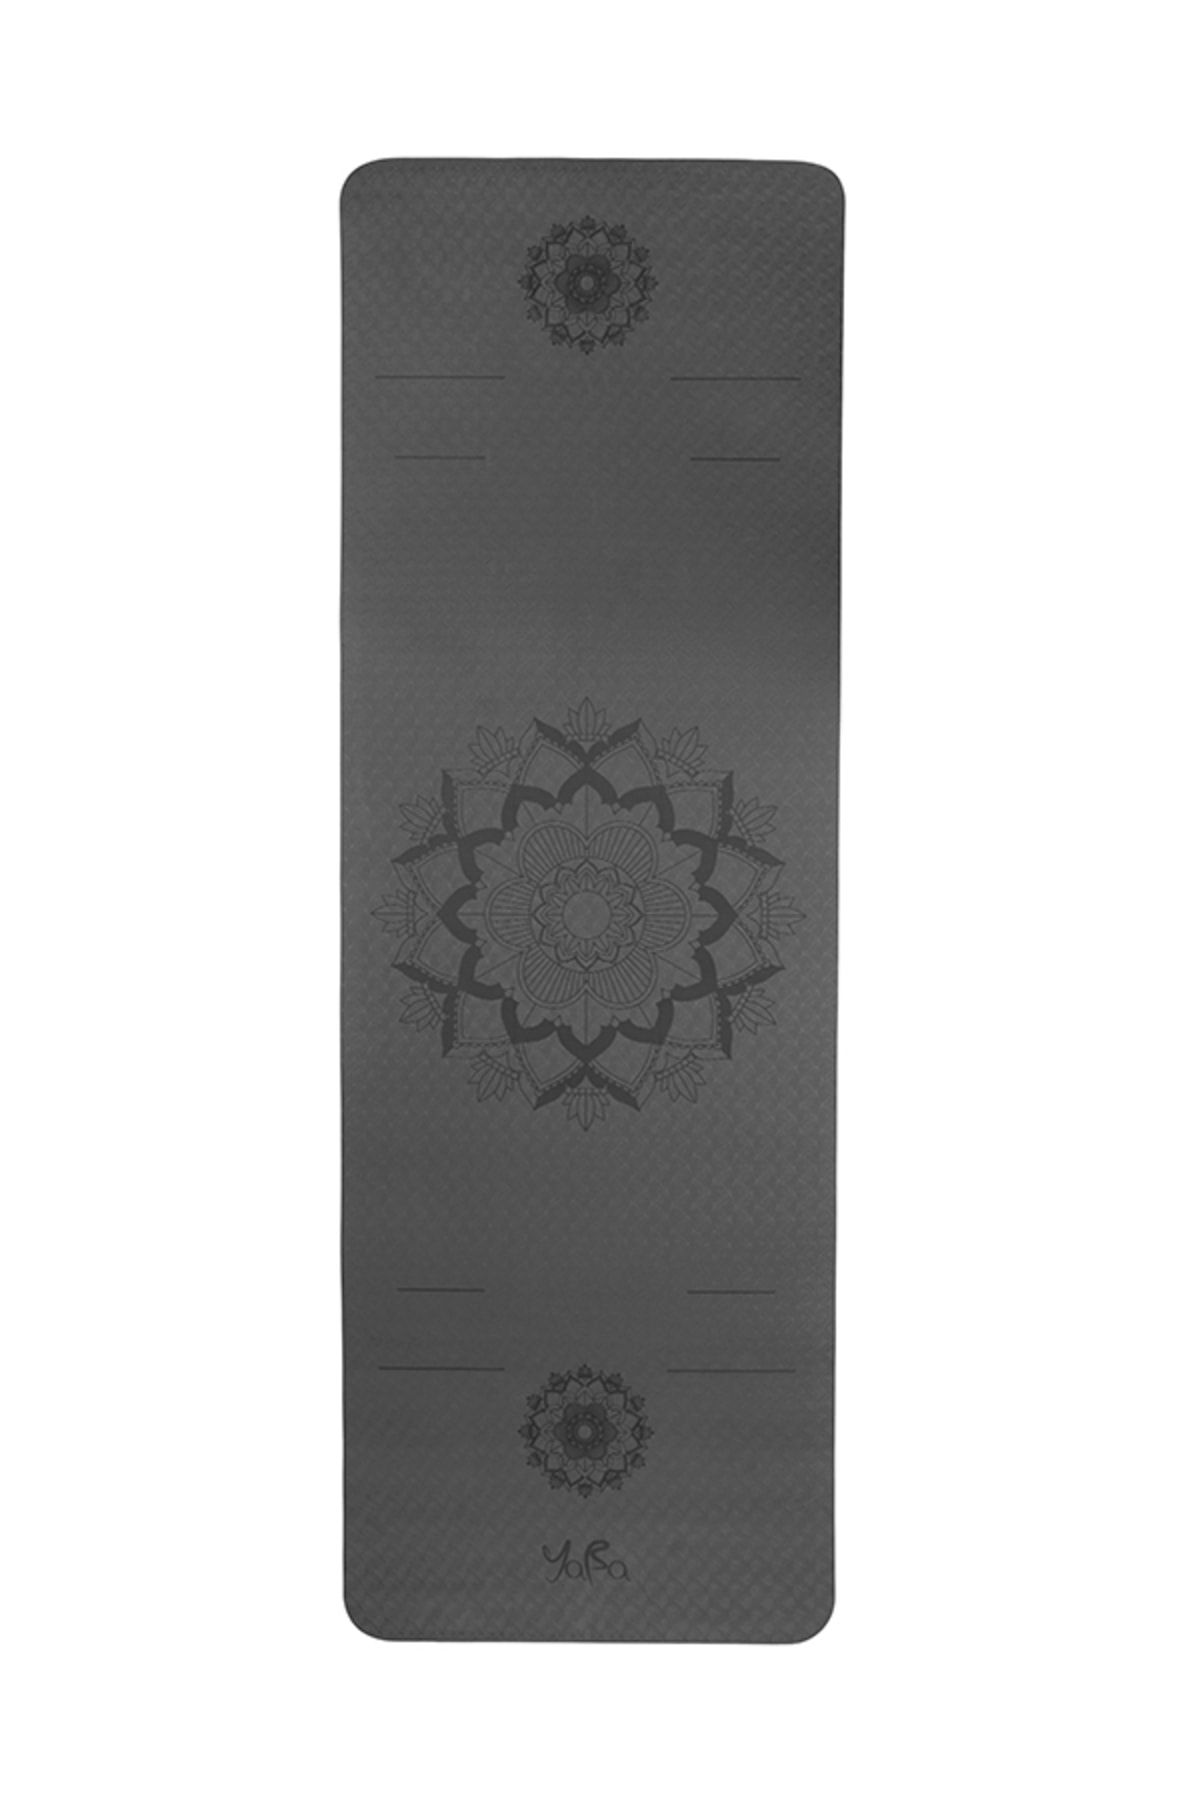 YABA Tpe Yoga Matı 6mm Pilates Matı Çiçek 183*61*0.6cm